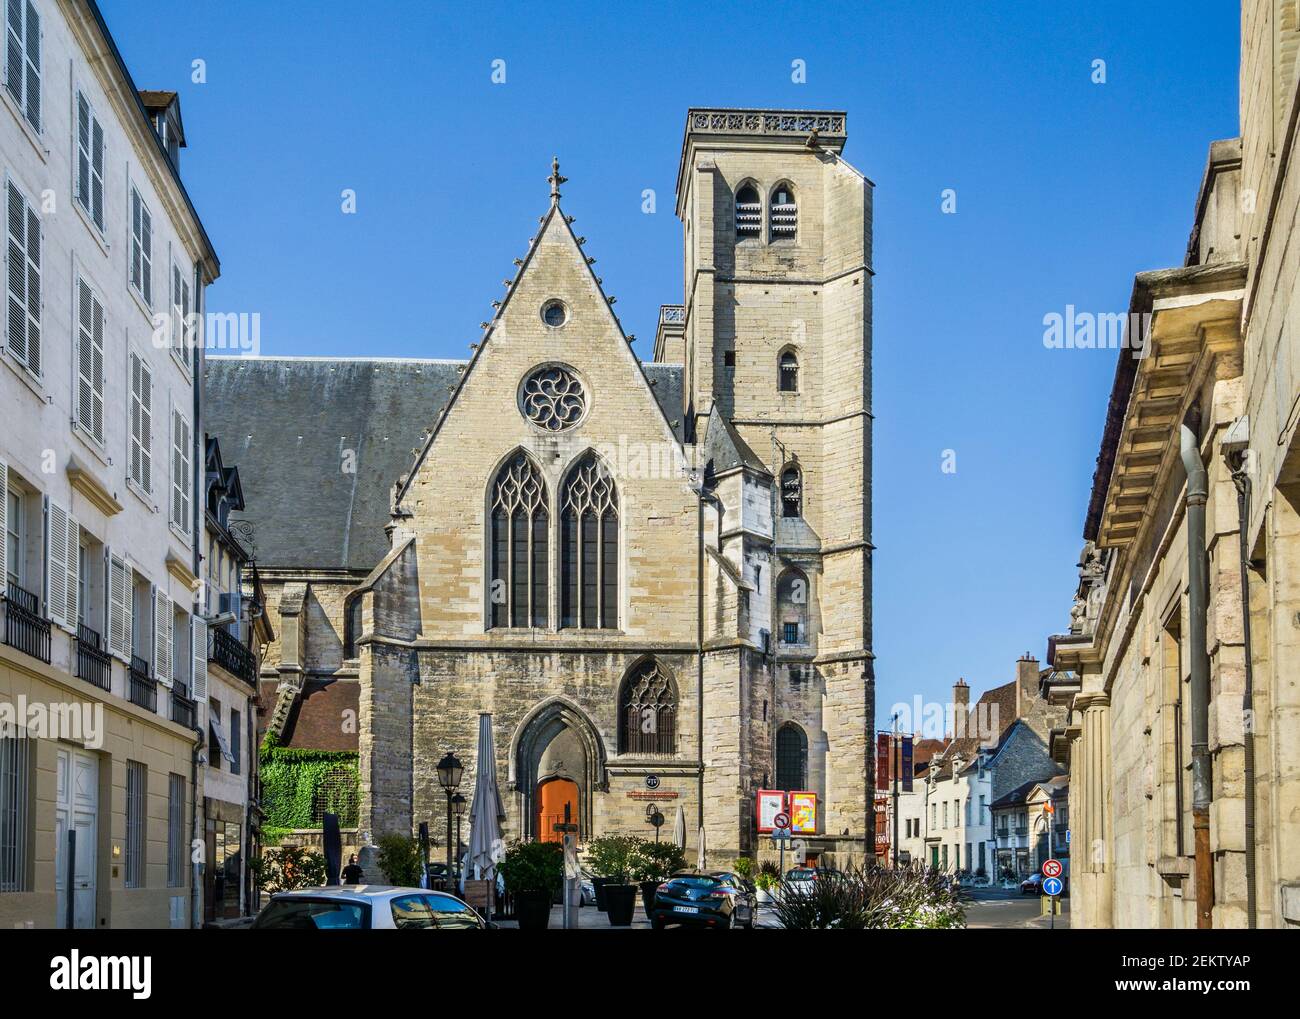 Im gotischen Stil Kirche Saint-Jean von Dijon, Burgund heute beherbergt das Dijon-Bourgogne Theater, Dijon, Côte-d'Or Abteilung, Bourgogne-Frankreich-Comté Region Stockfoto